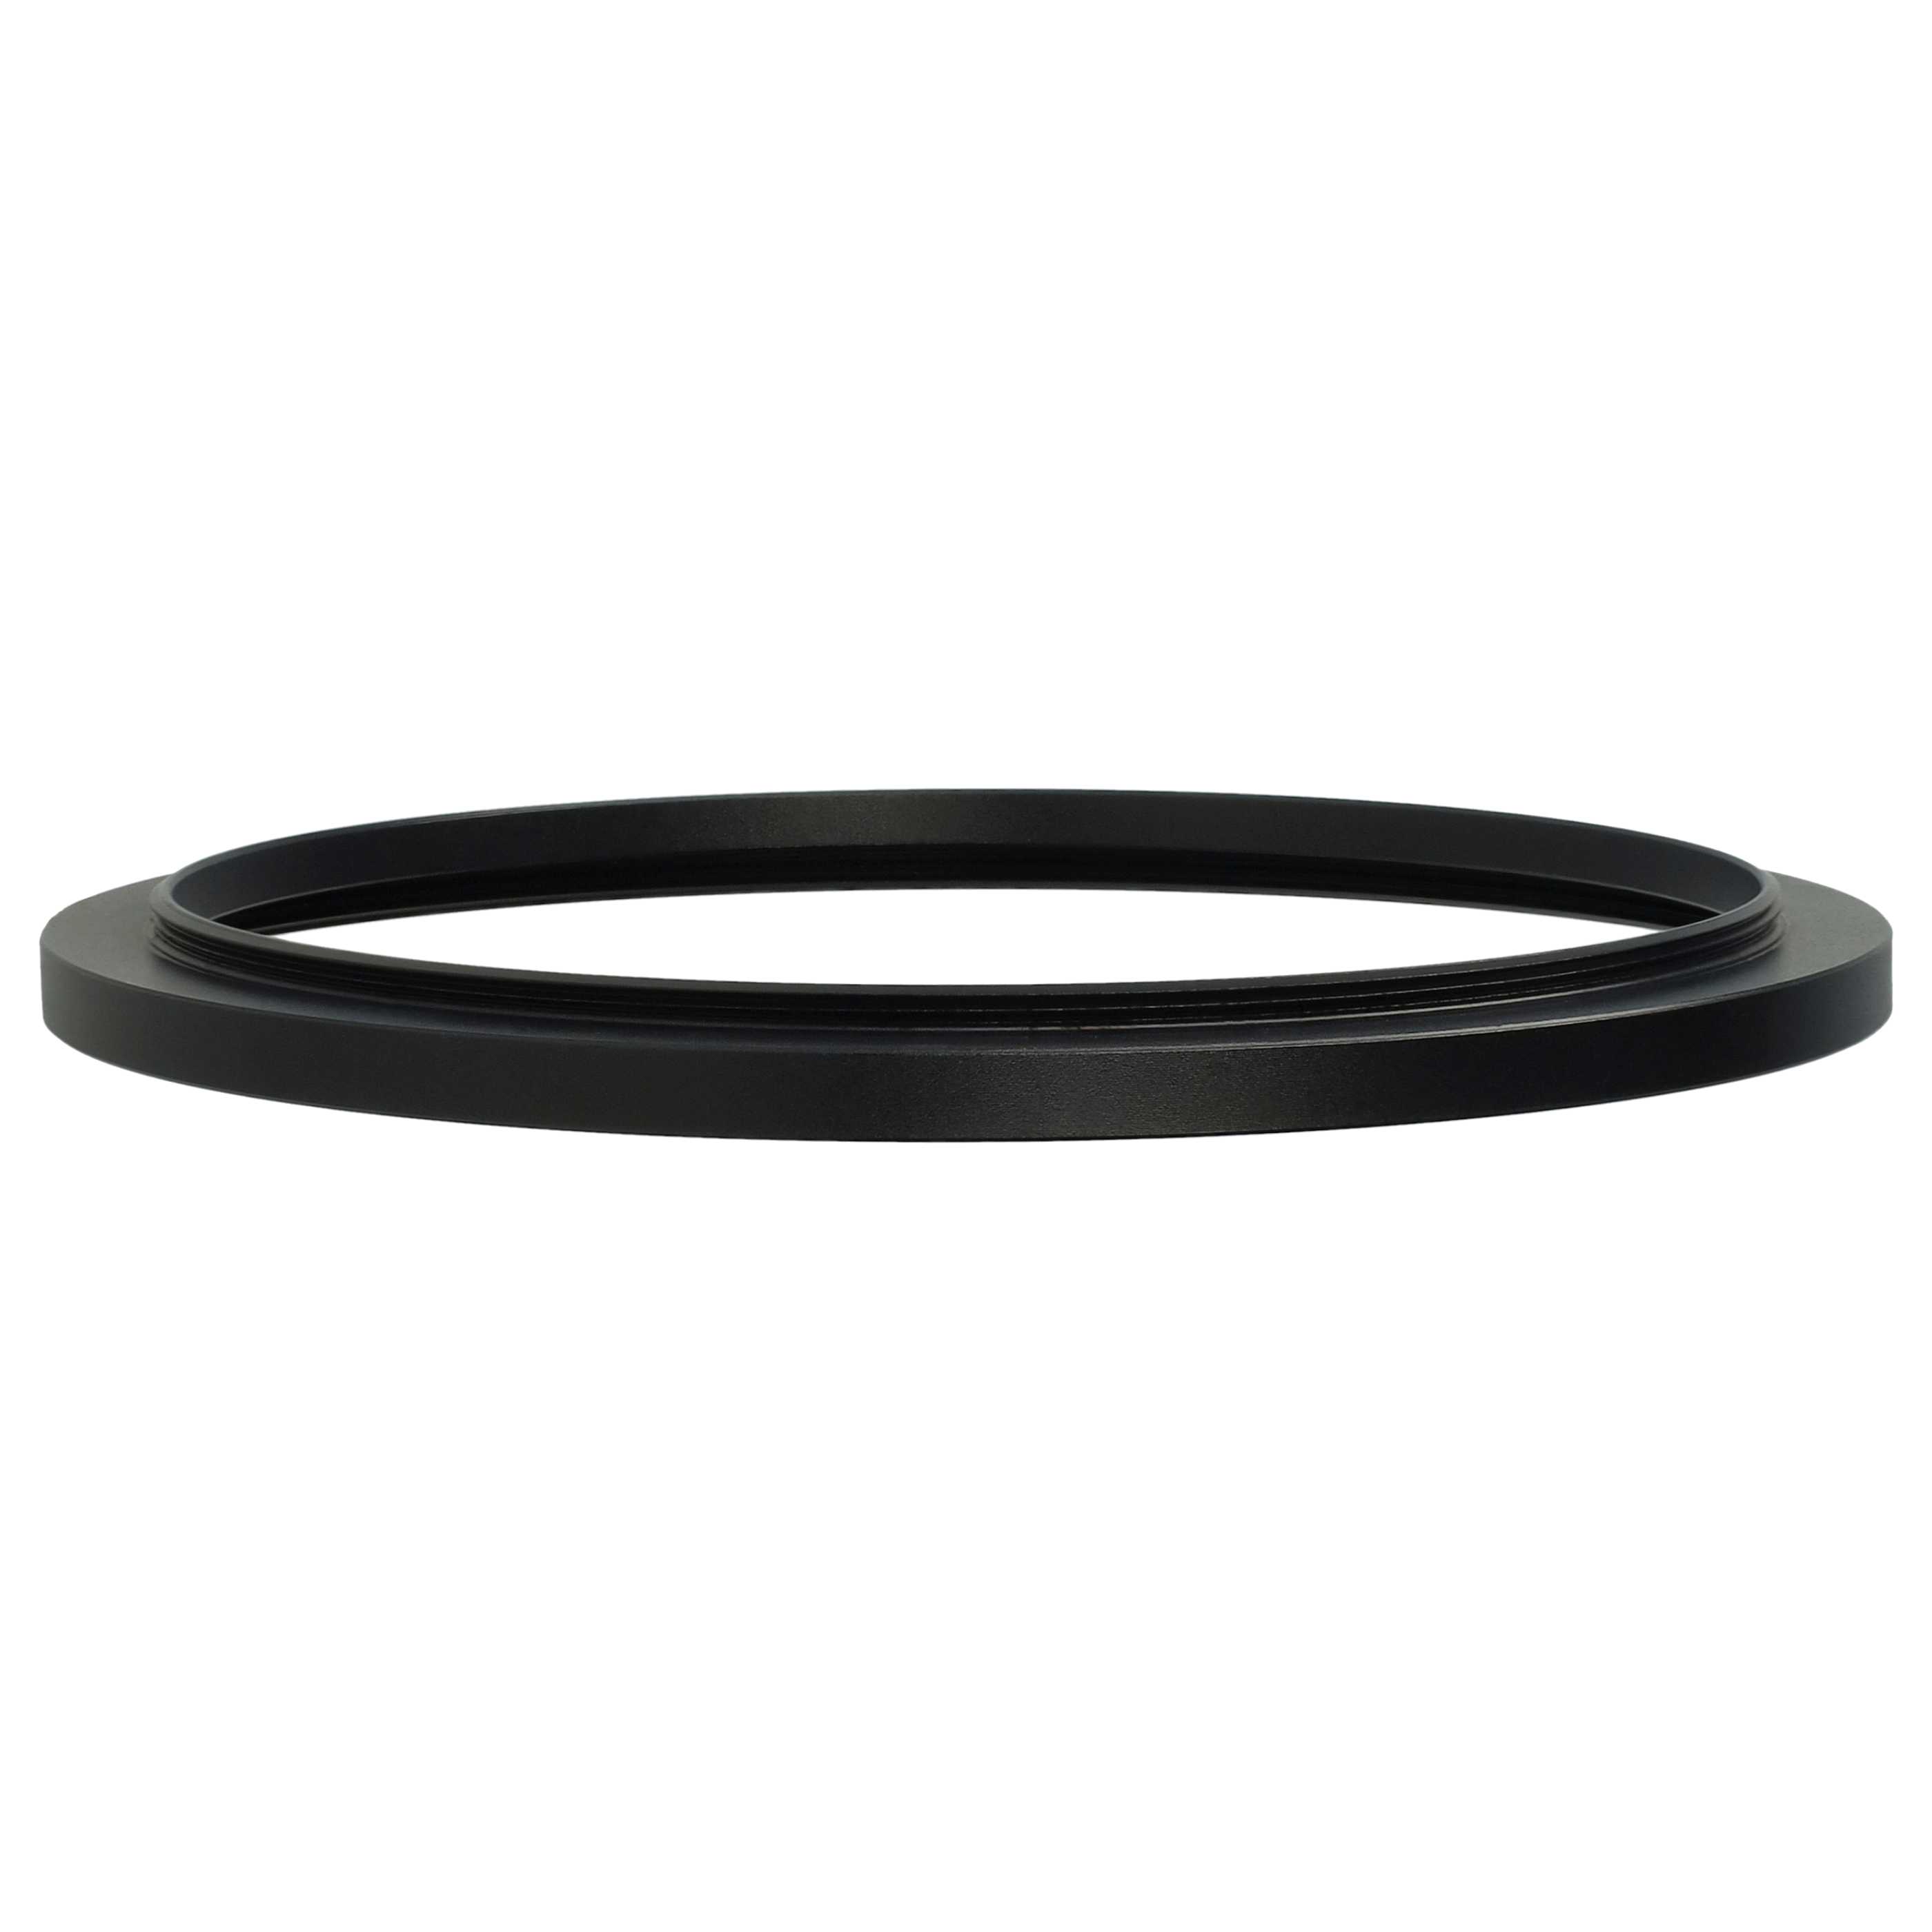 Step-Up-Ring Adapter 95 mm auf 105 mm passend für diverse Kamera-Objektive - Filteradapter